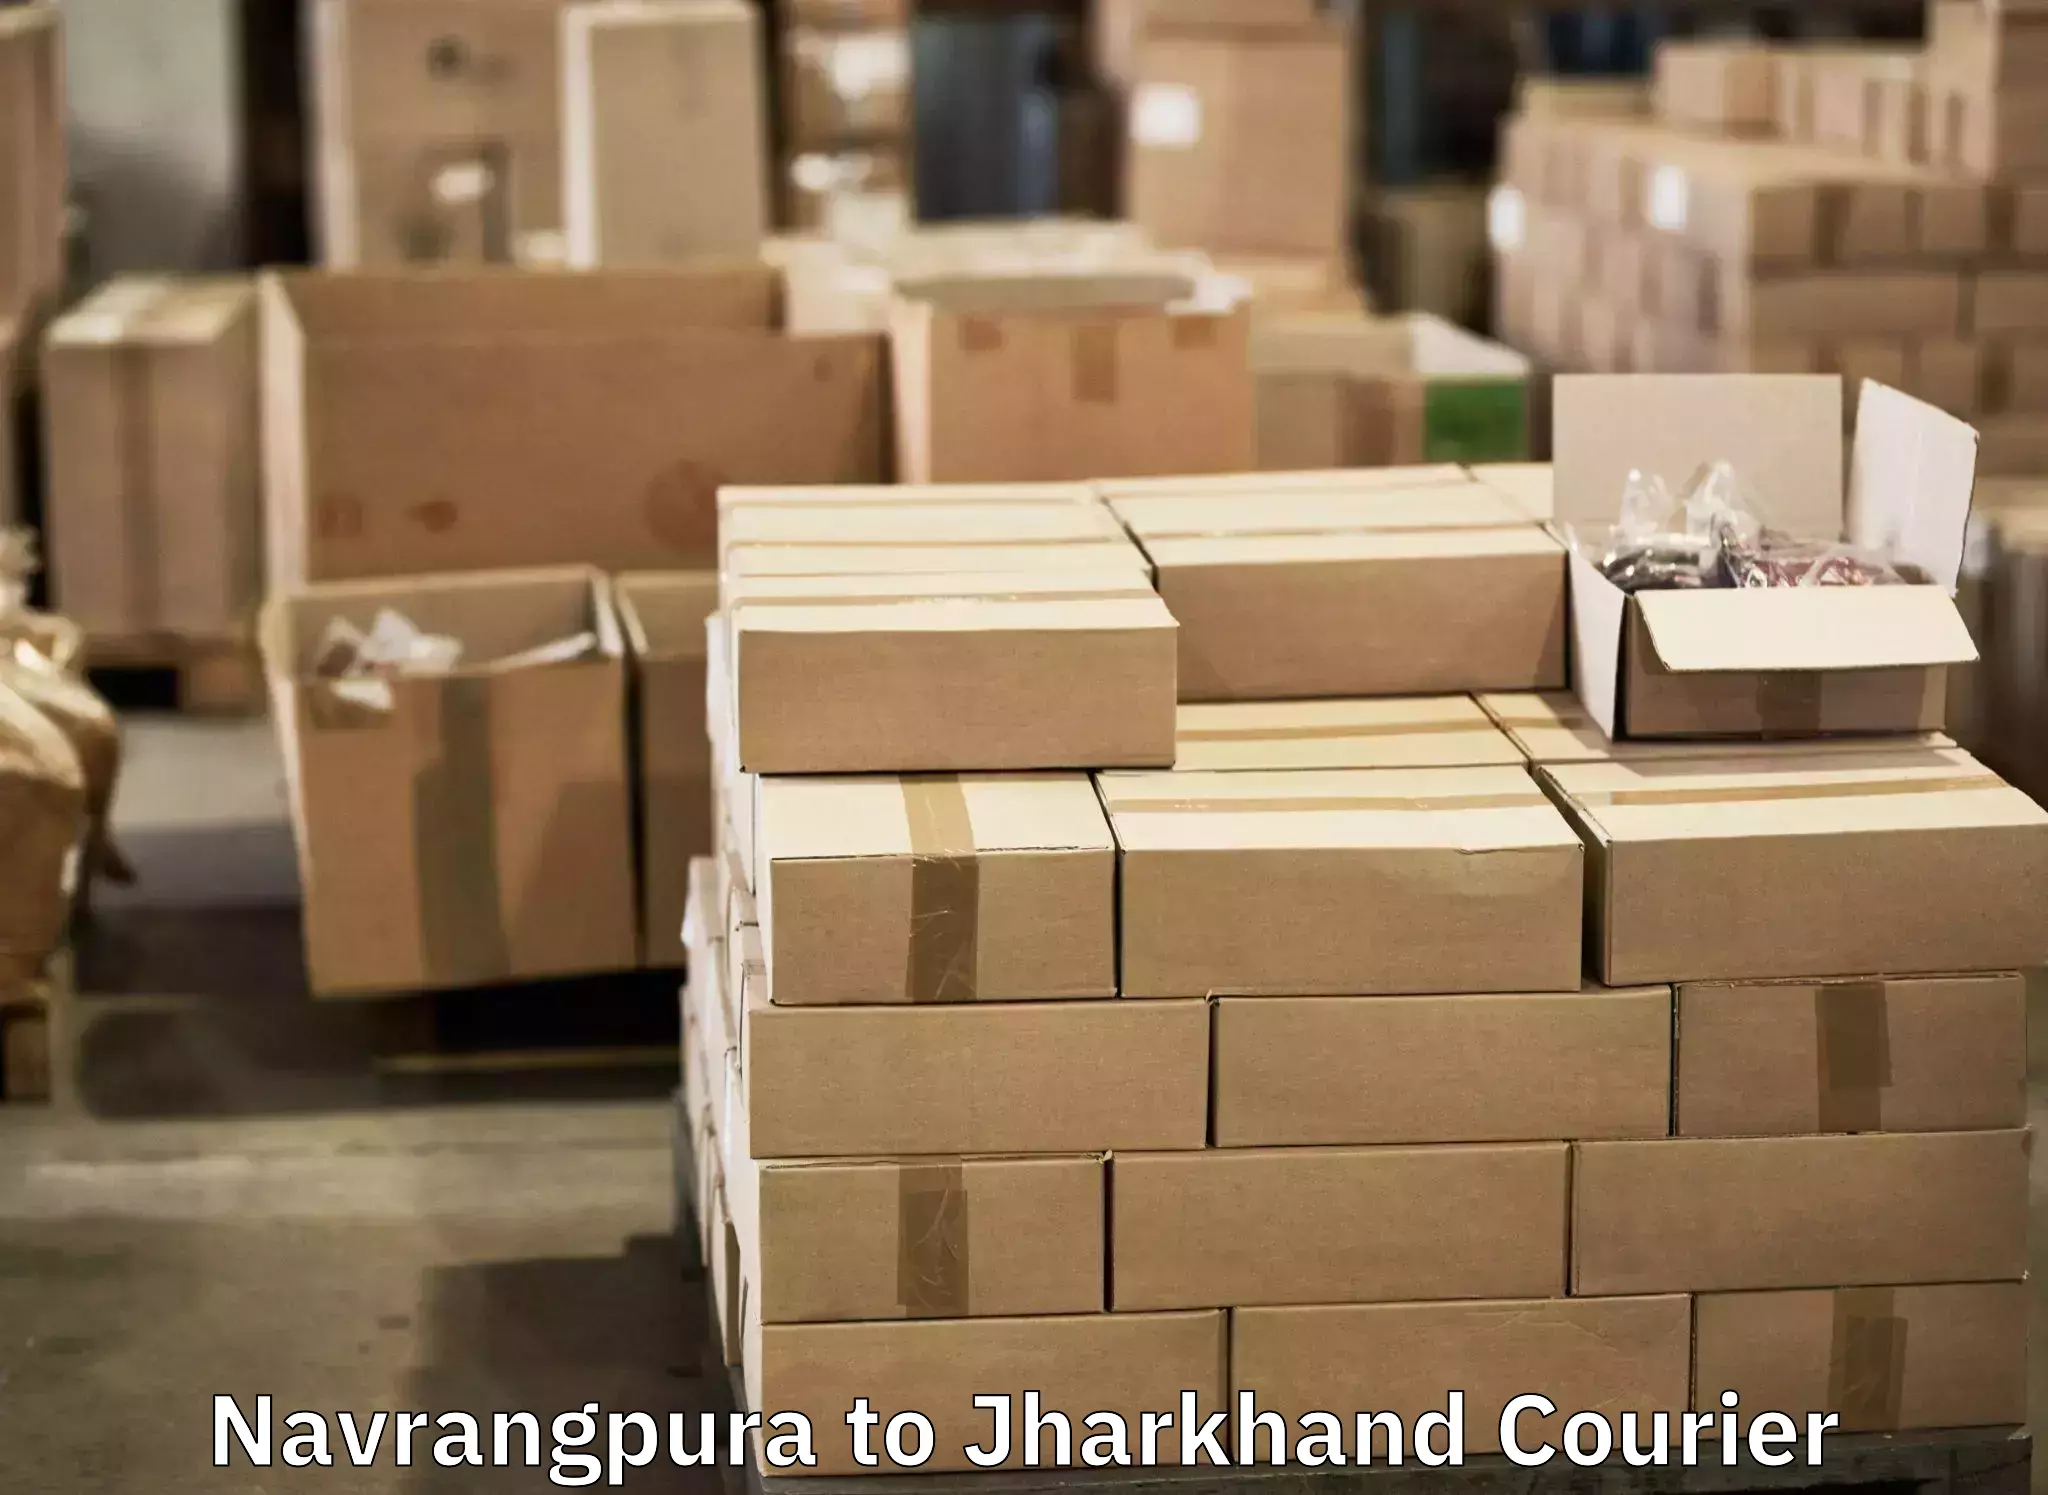 Luggage transit service Navrangpura to Jamshedpur